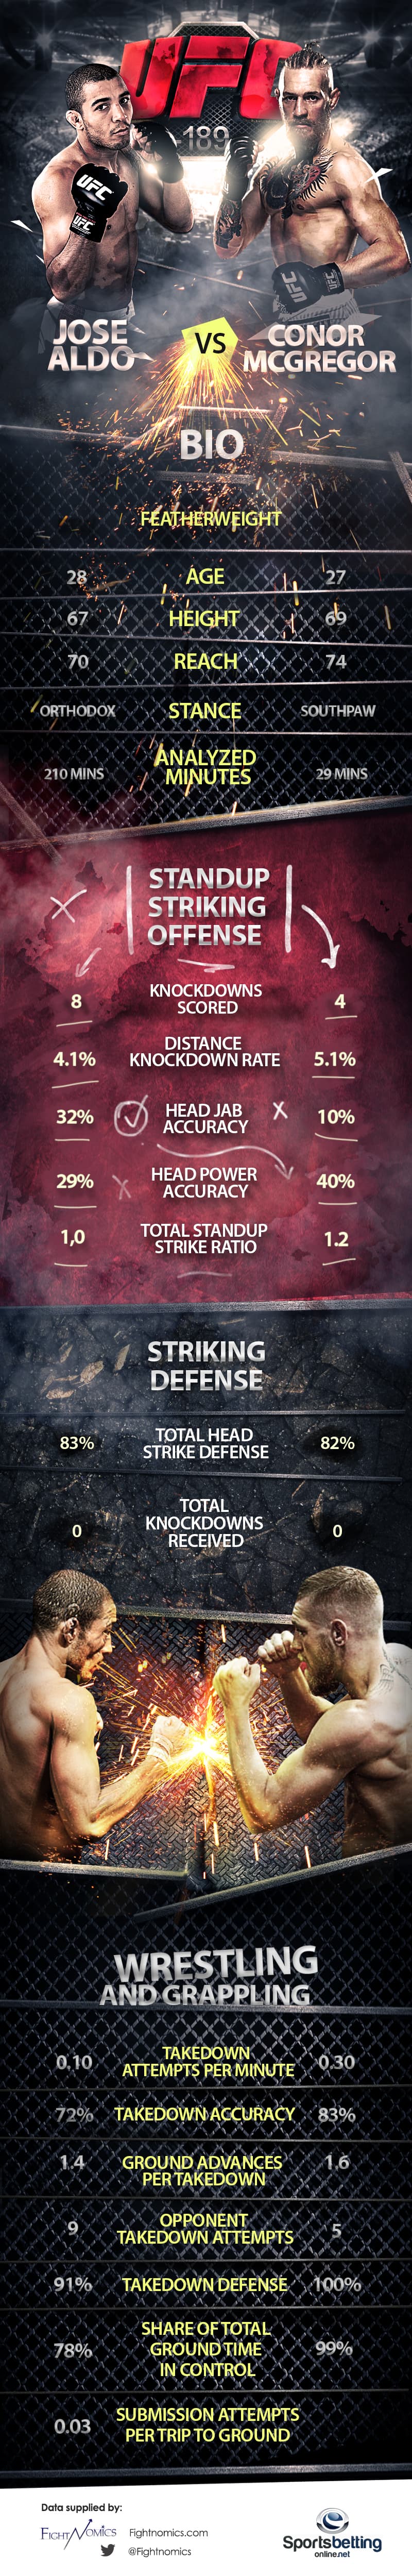 UFC189 Aldo vs. McGregor Infographic